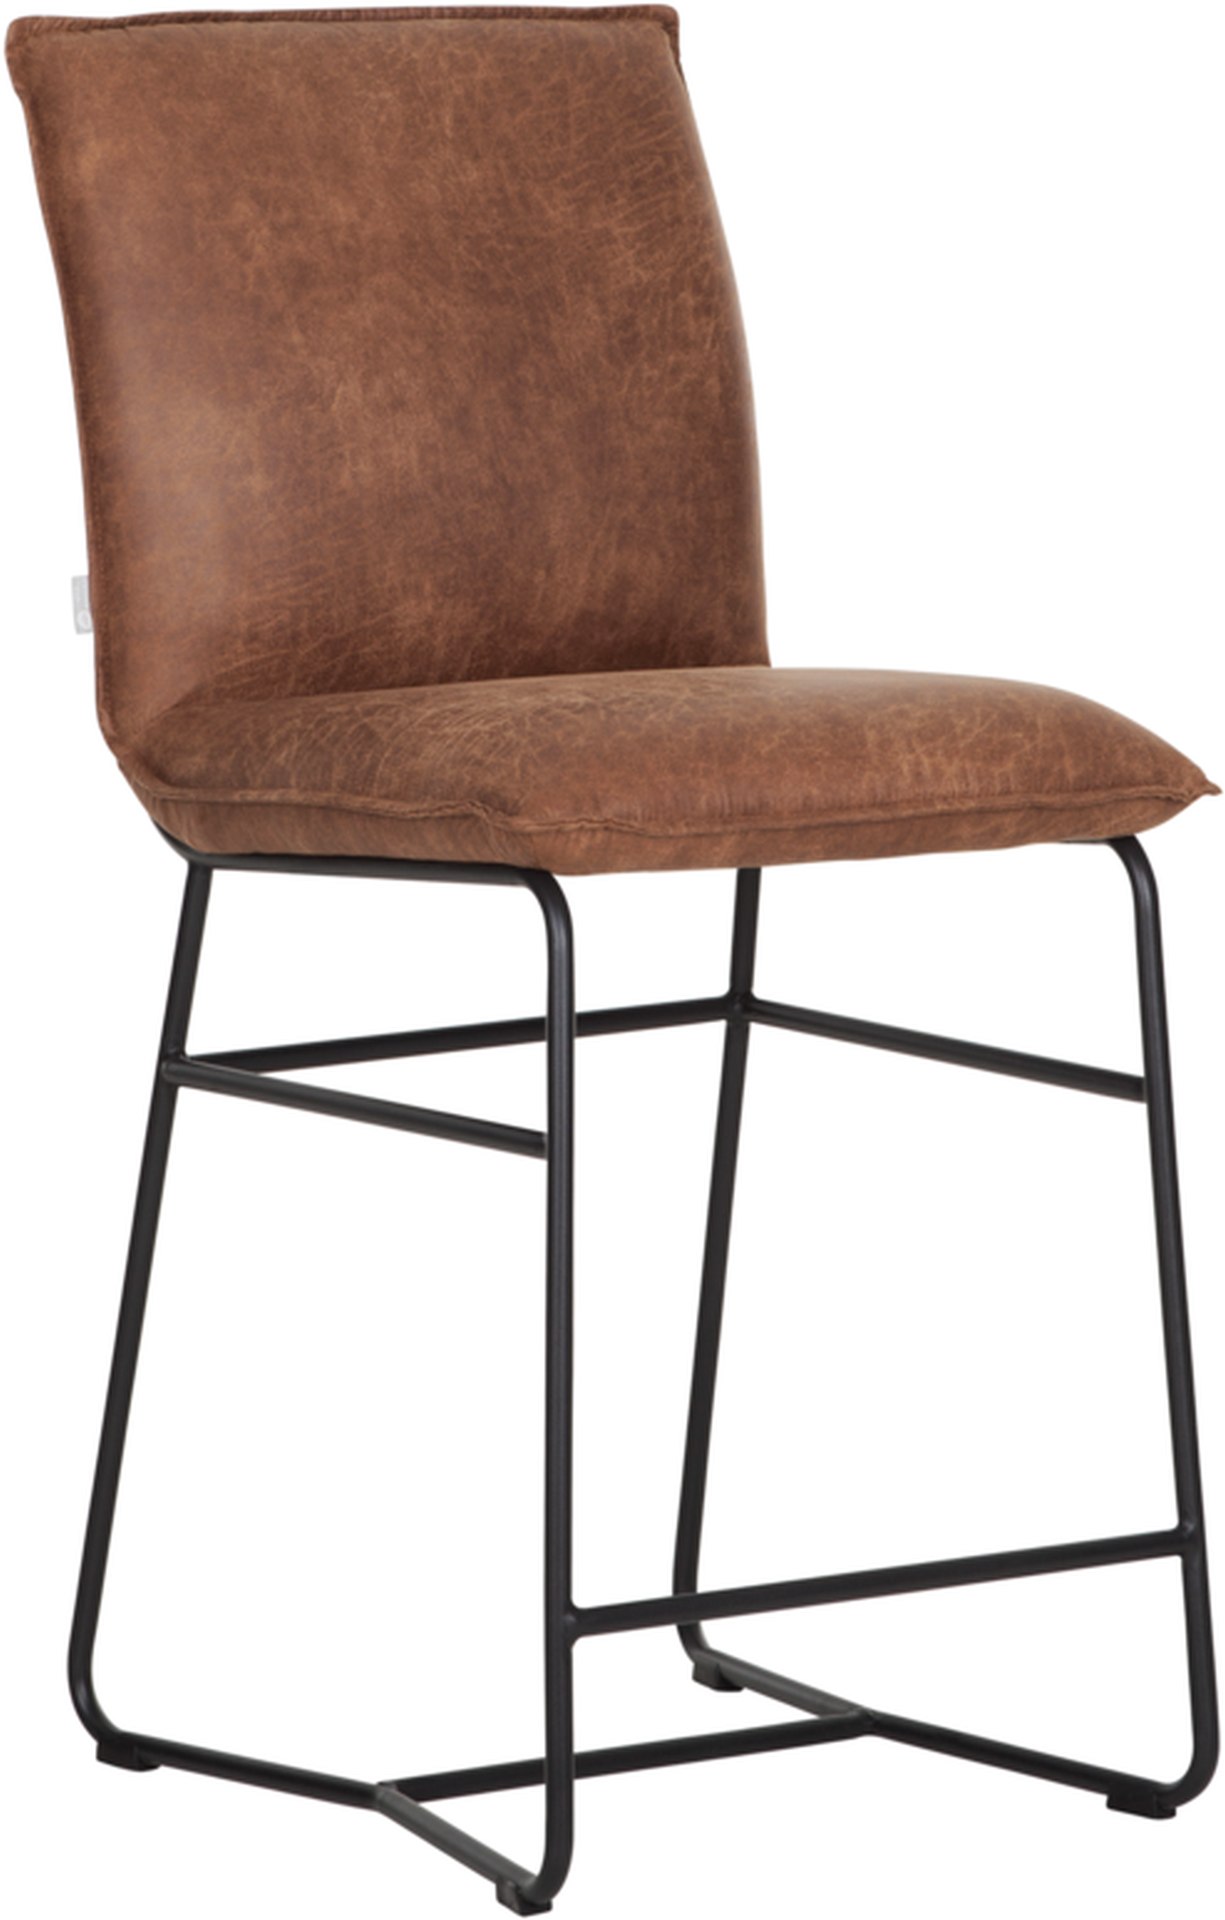 Der Barstuhl Delaware überzeugt mit seinem modernem aber auch schlichtem Design. Gefertigt wurde der Stuhl aus recyceltem Leder, welches einen Cognac Farbton besitzt. Das Gestell ist aus Metall und ist Schwarz.